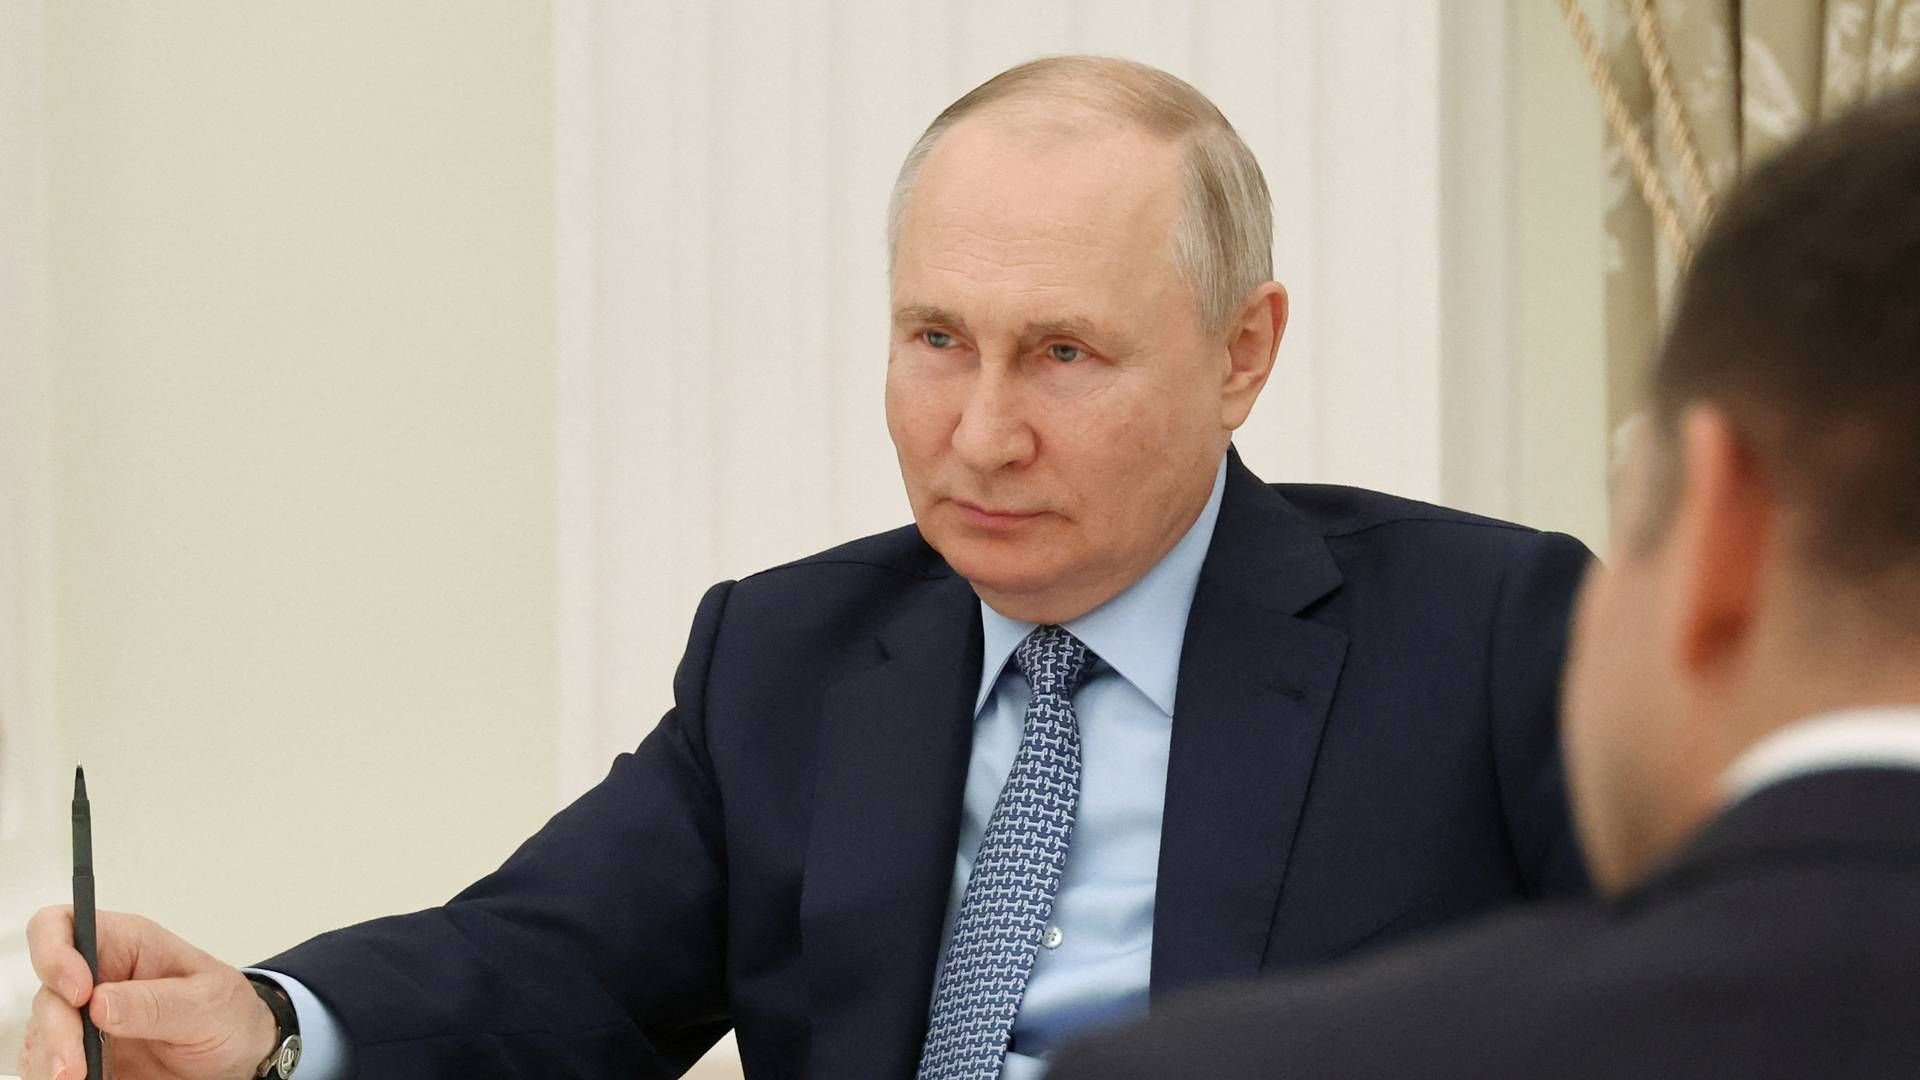 Søndag 16. juli underskrev den russiske præsident Vladimir Putin et dekret, som gjorde Rusland i stand til at tage kontrollen med Carlsbergs forretning i landet. Dagen efter blev overtagelsen gennemført. | Foto: Sputnik